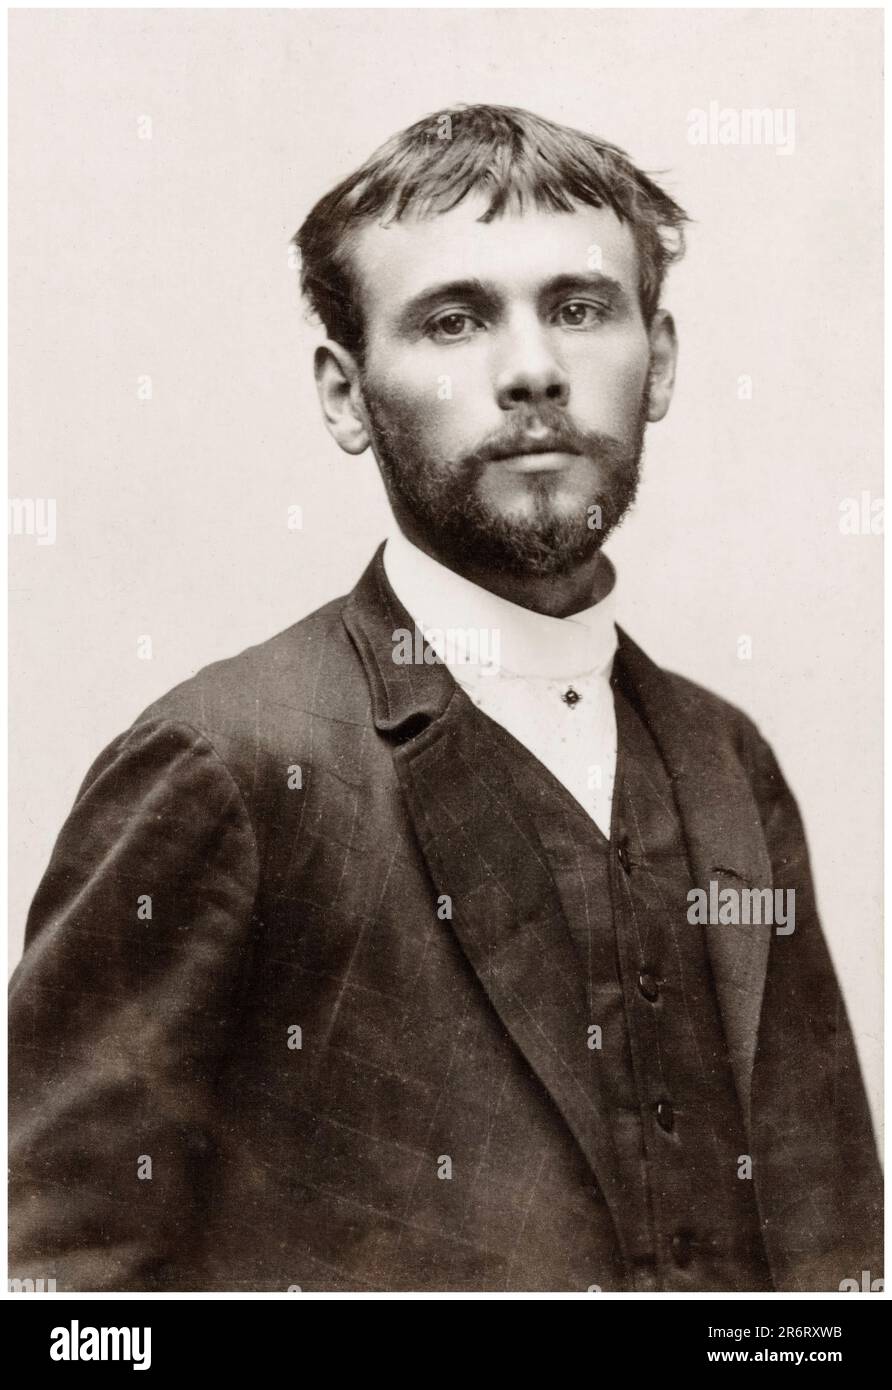 Gustav Klimt (1862-1918), österreichischer Symbolmaler, Porträtfoto auf Papier gedruckt auf Pappe von unbekanntem Fotografen, 1887 Stockfoto